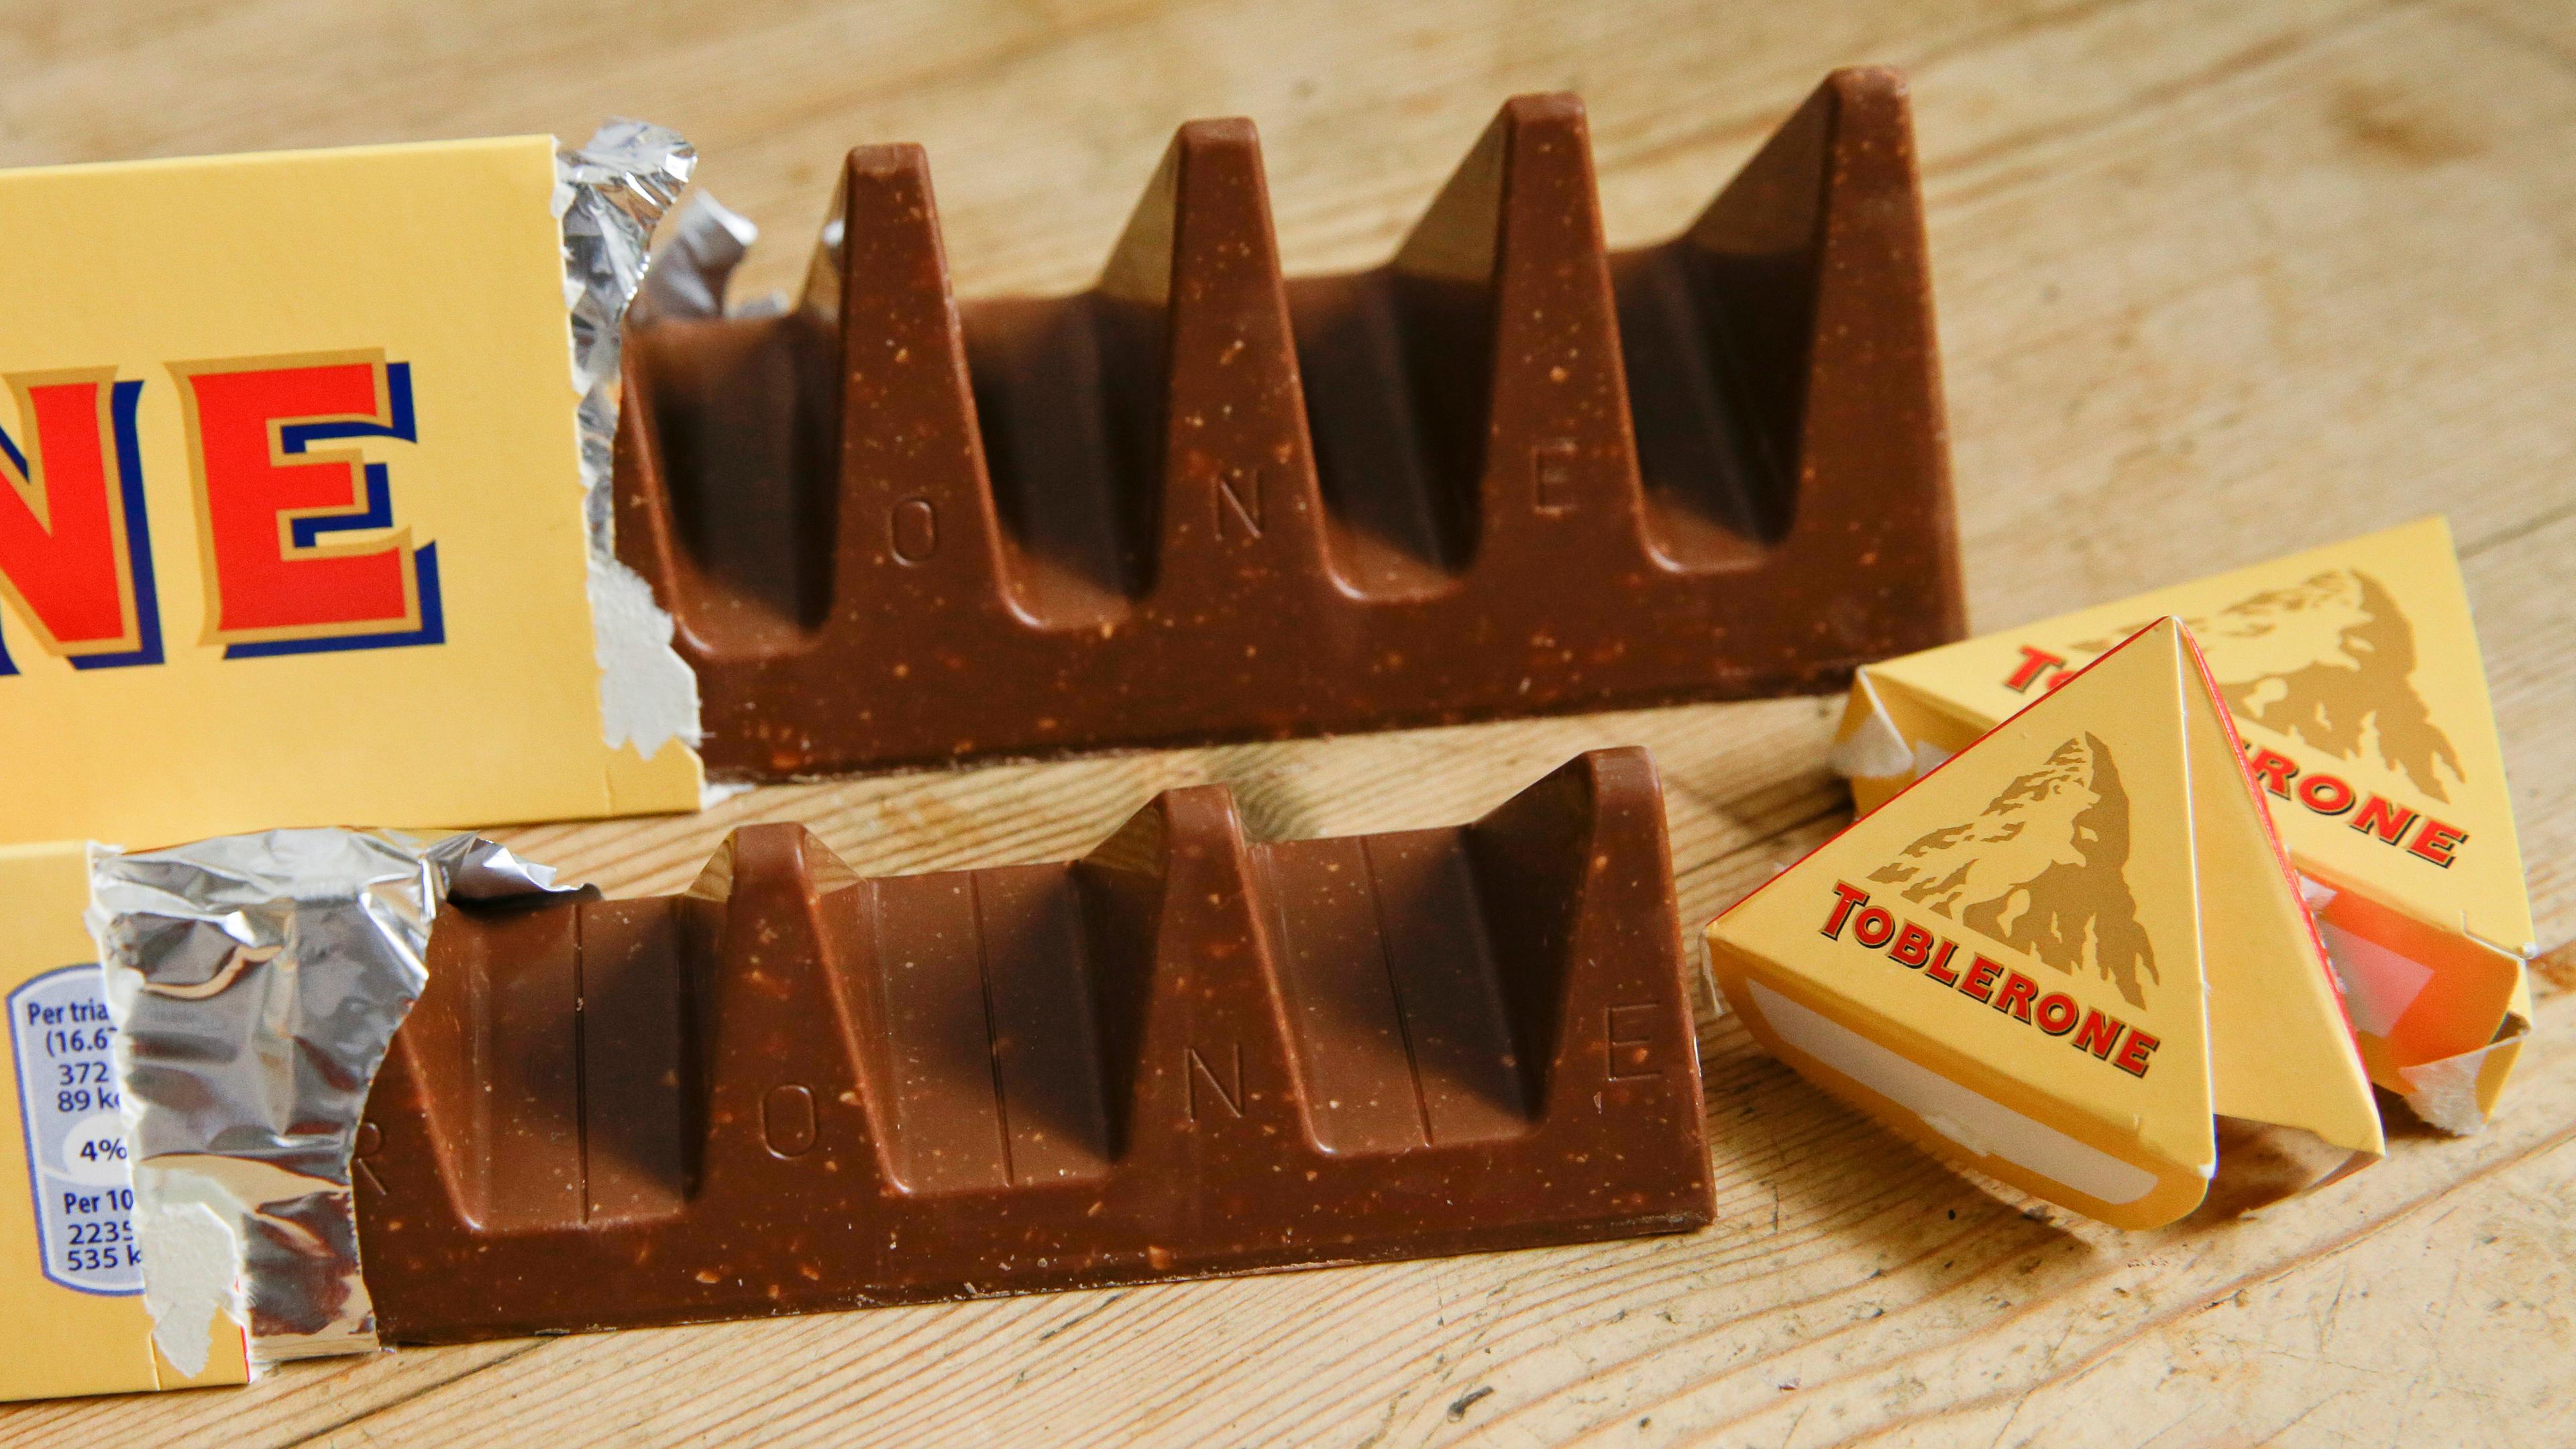 Archiv: Zwei Tafeln der Schweizer Toblerone-Schokolade liege auf einem Tisch